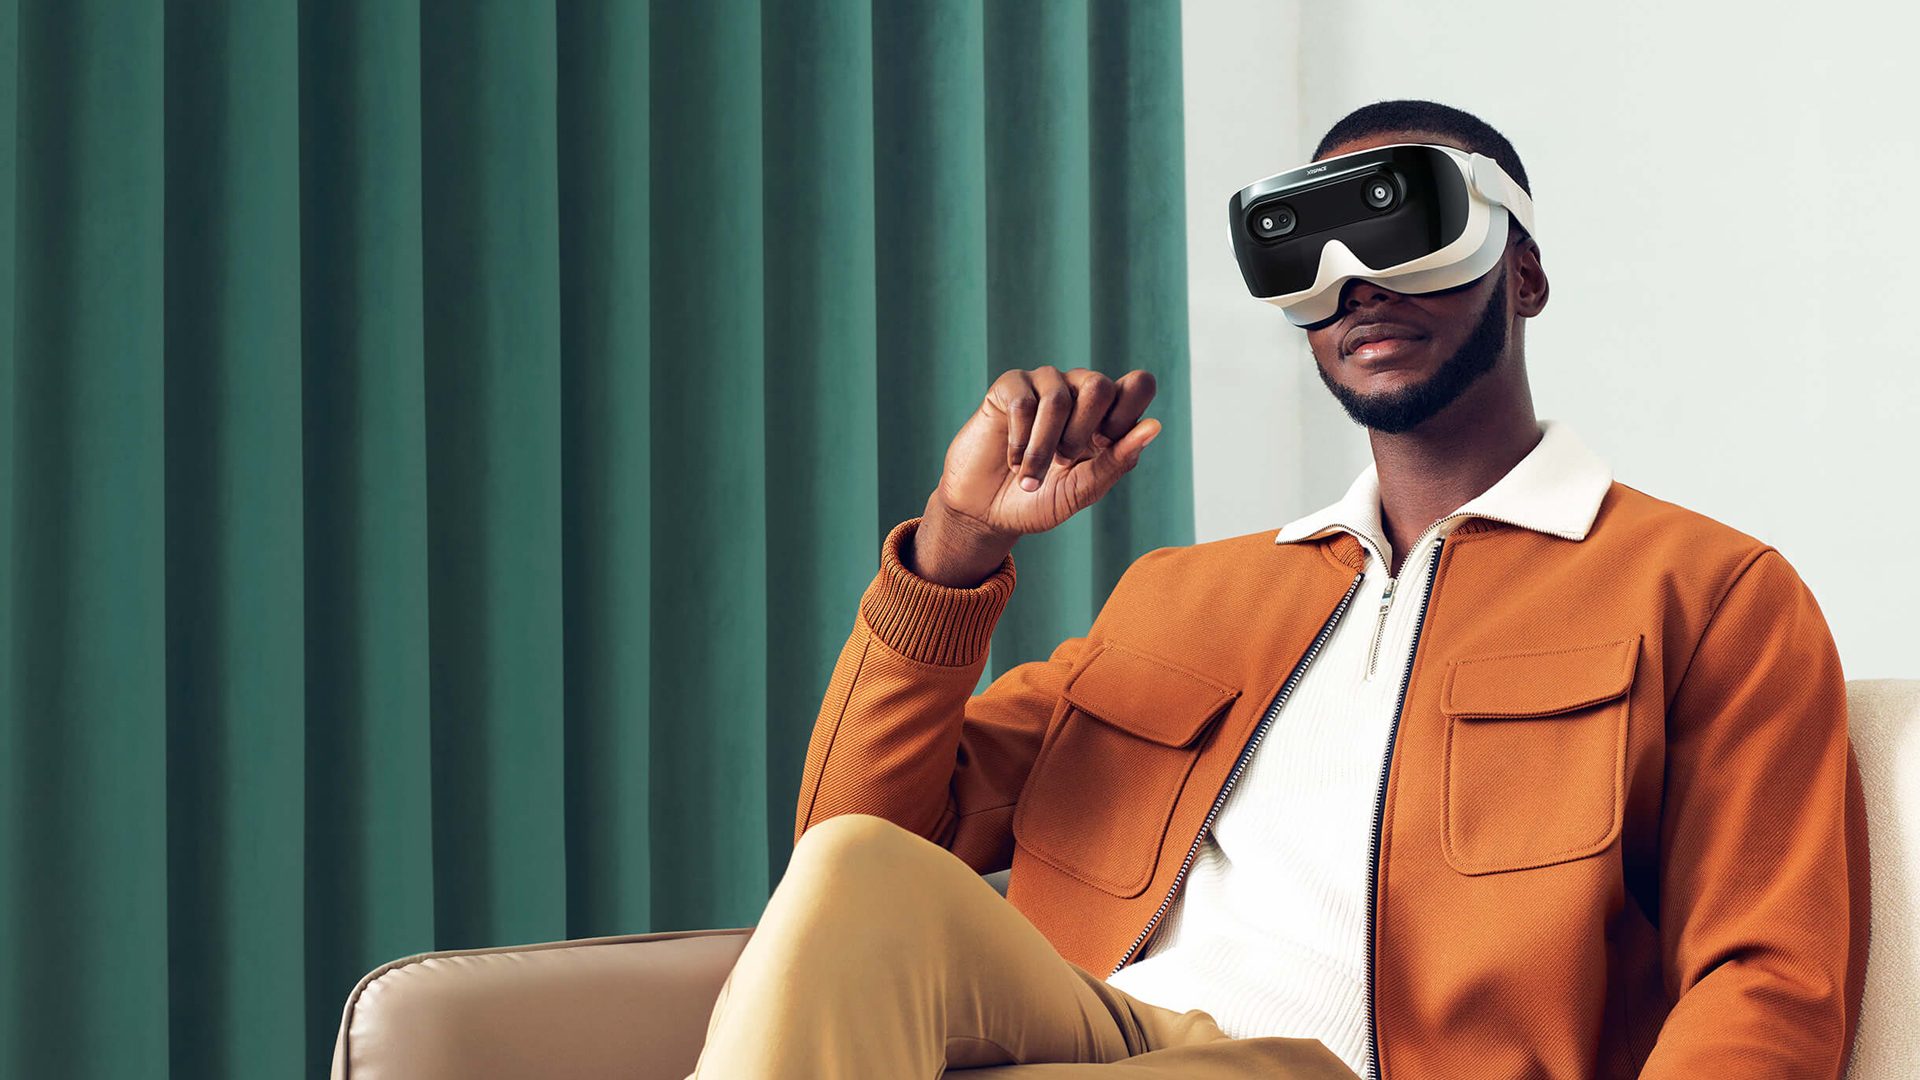 Former HTC CEO Unveils 5G-enabled VR Headset & Social VR Platform - Road to VR